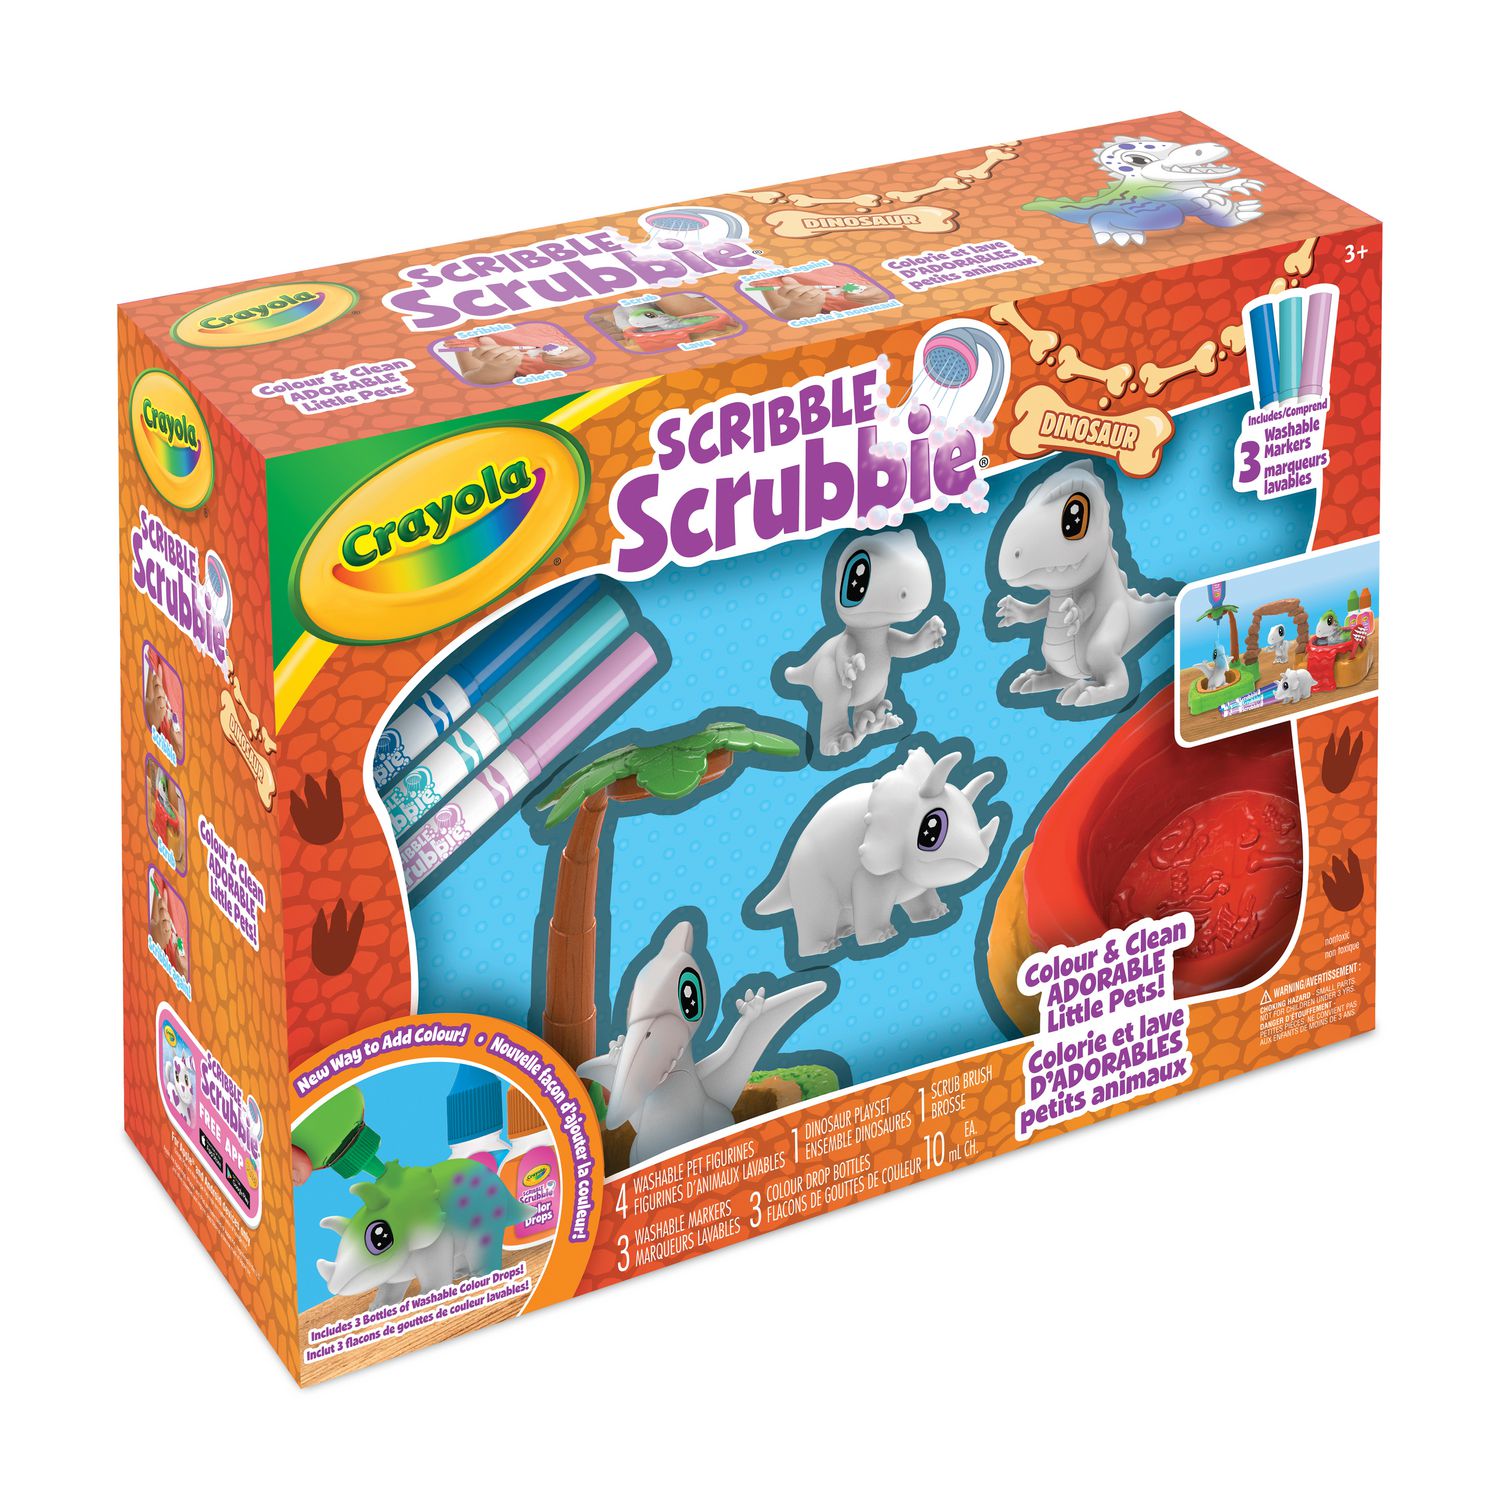 Crayola - Scribble Scrubbie Pets 